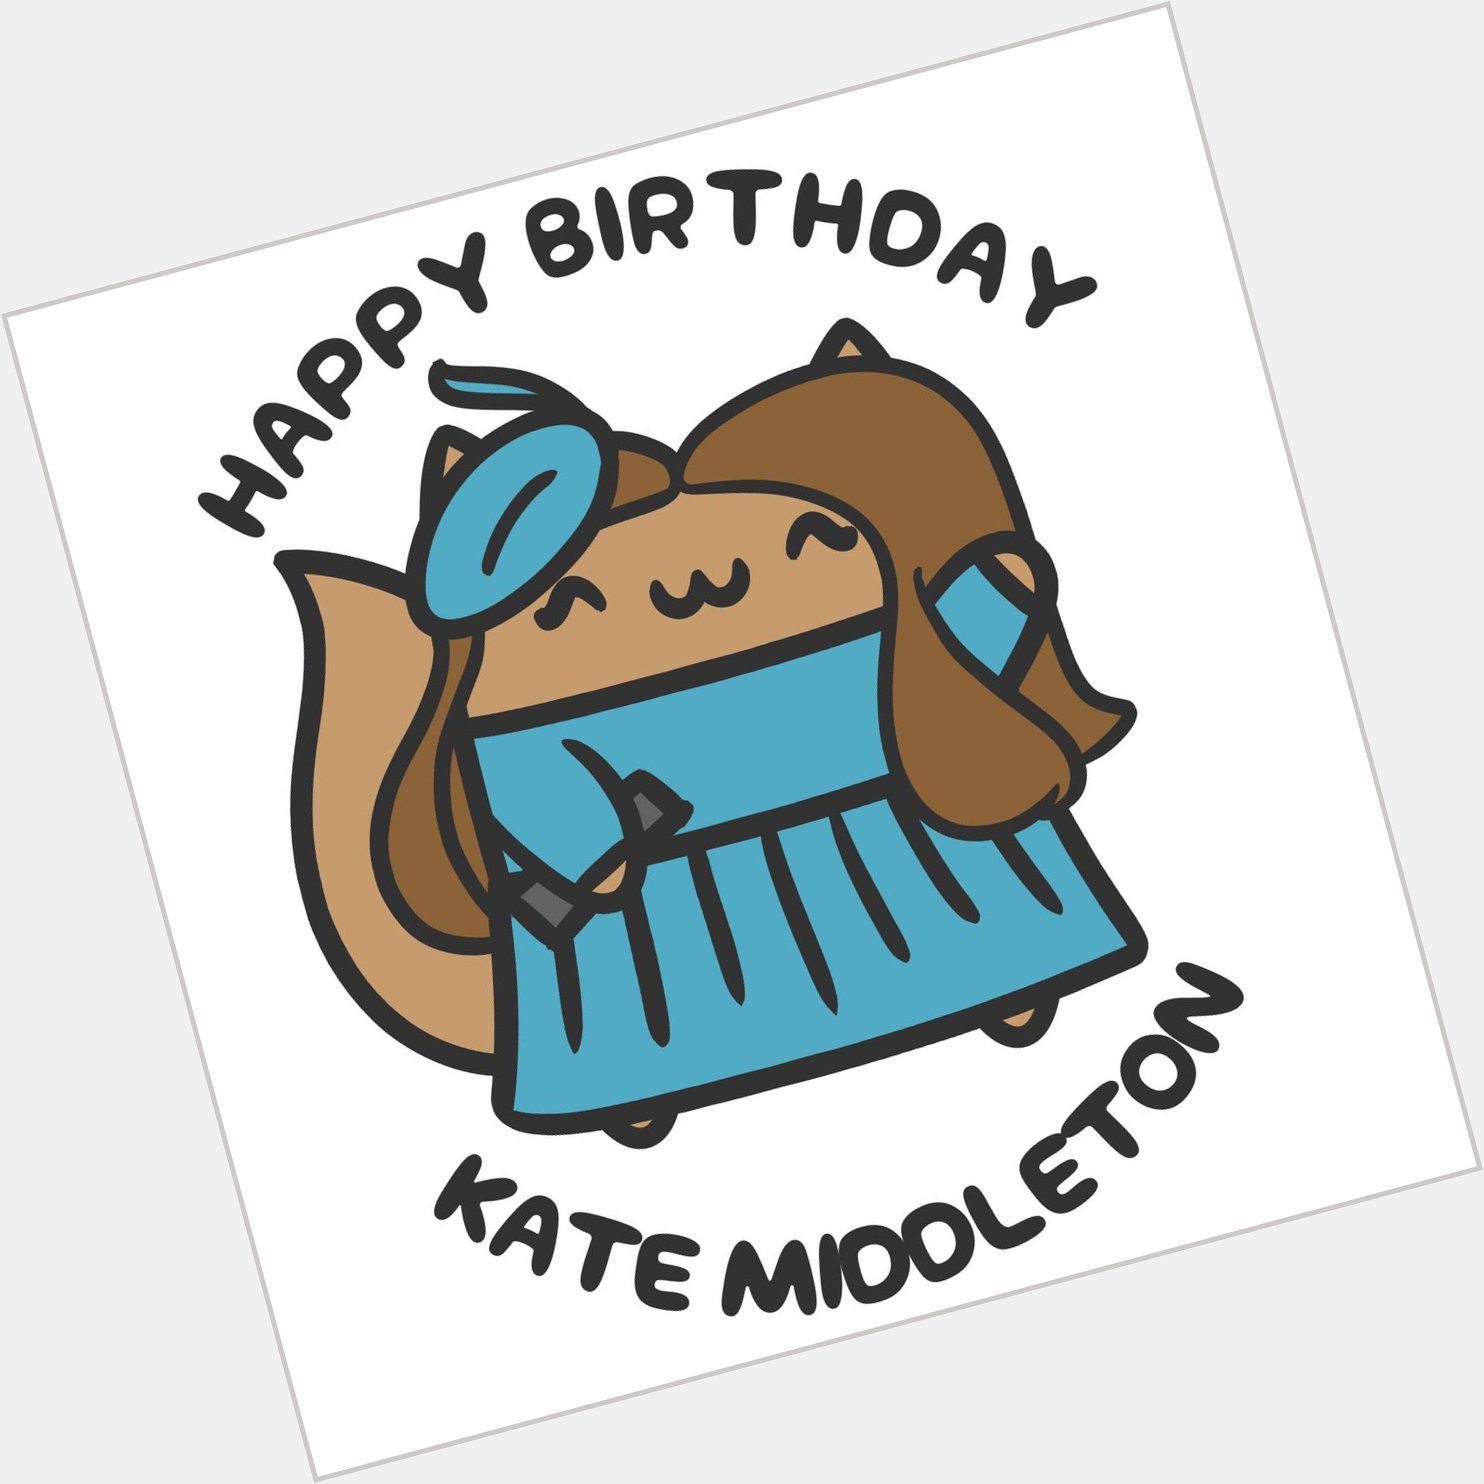 Happy Birthday, Kate Middleton!  